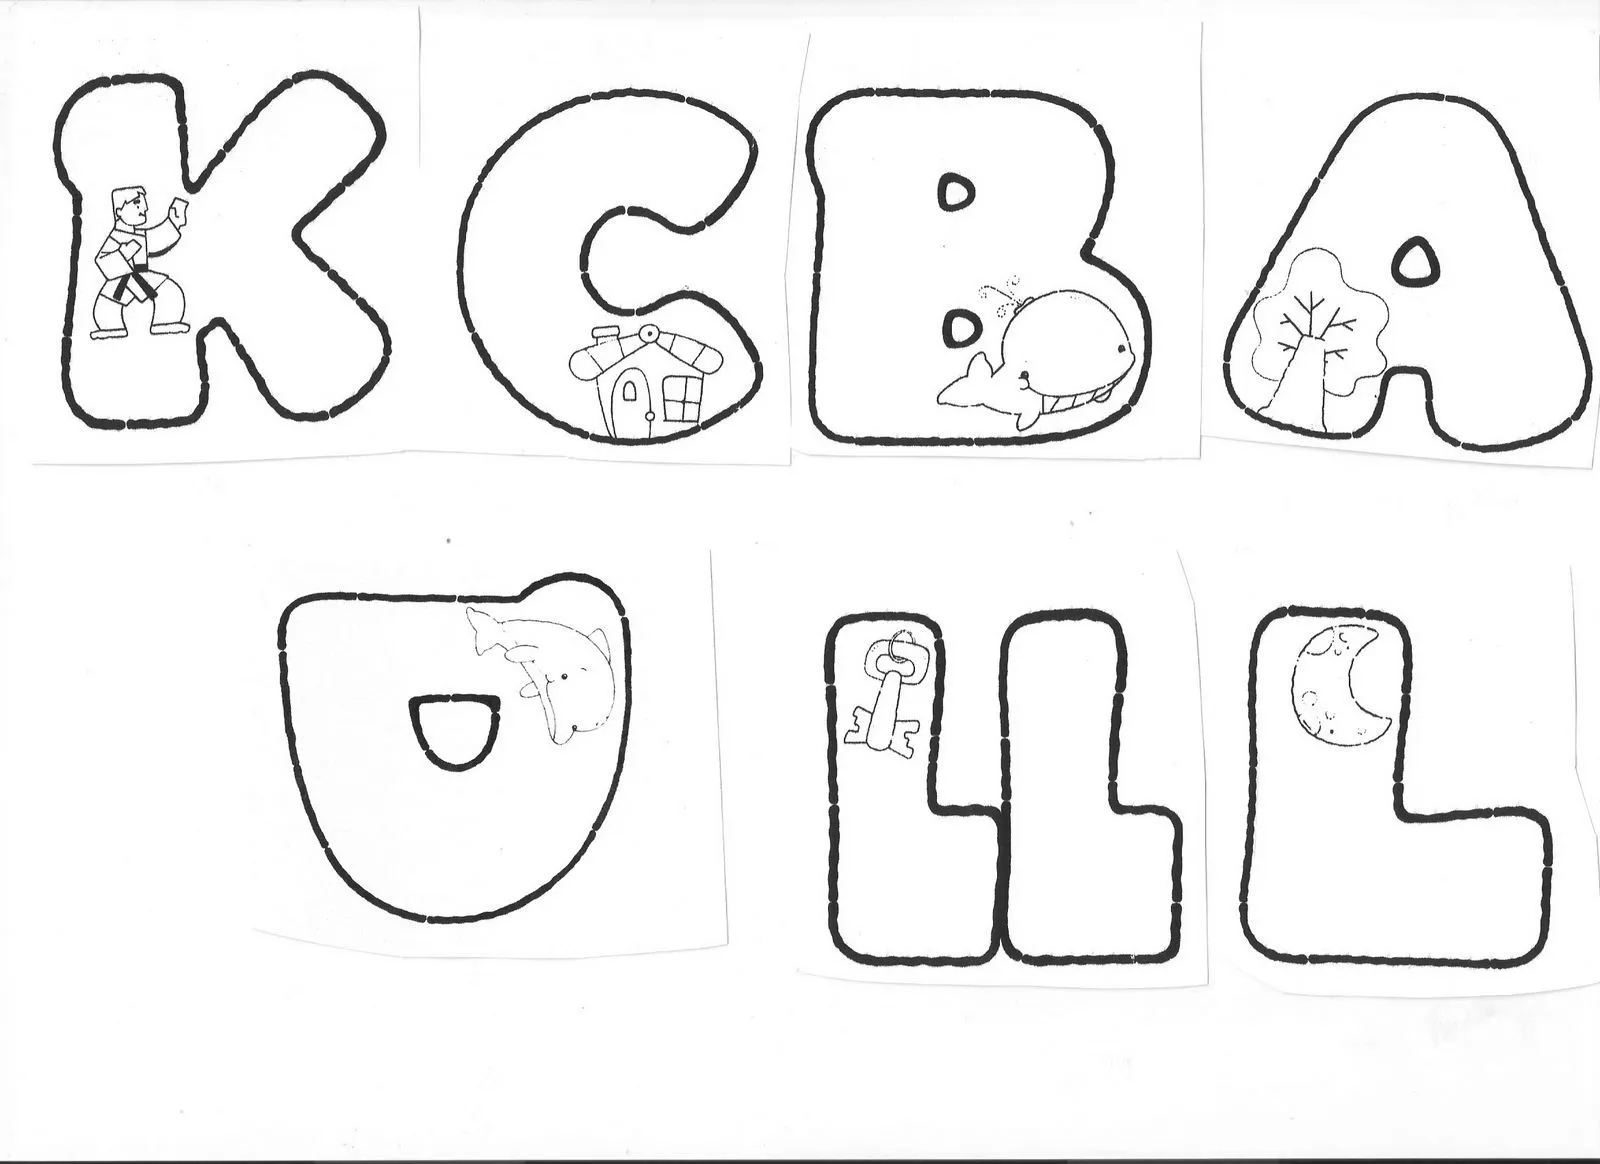 Dibujos de letras en foami moldes - Imagui